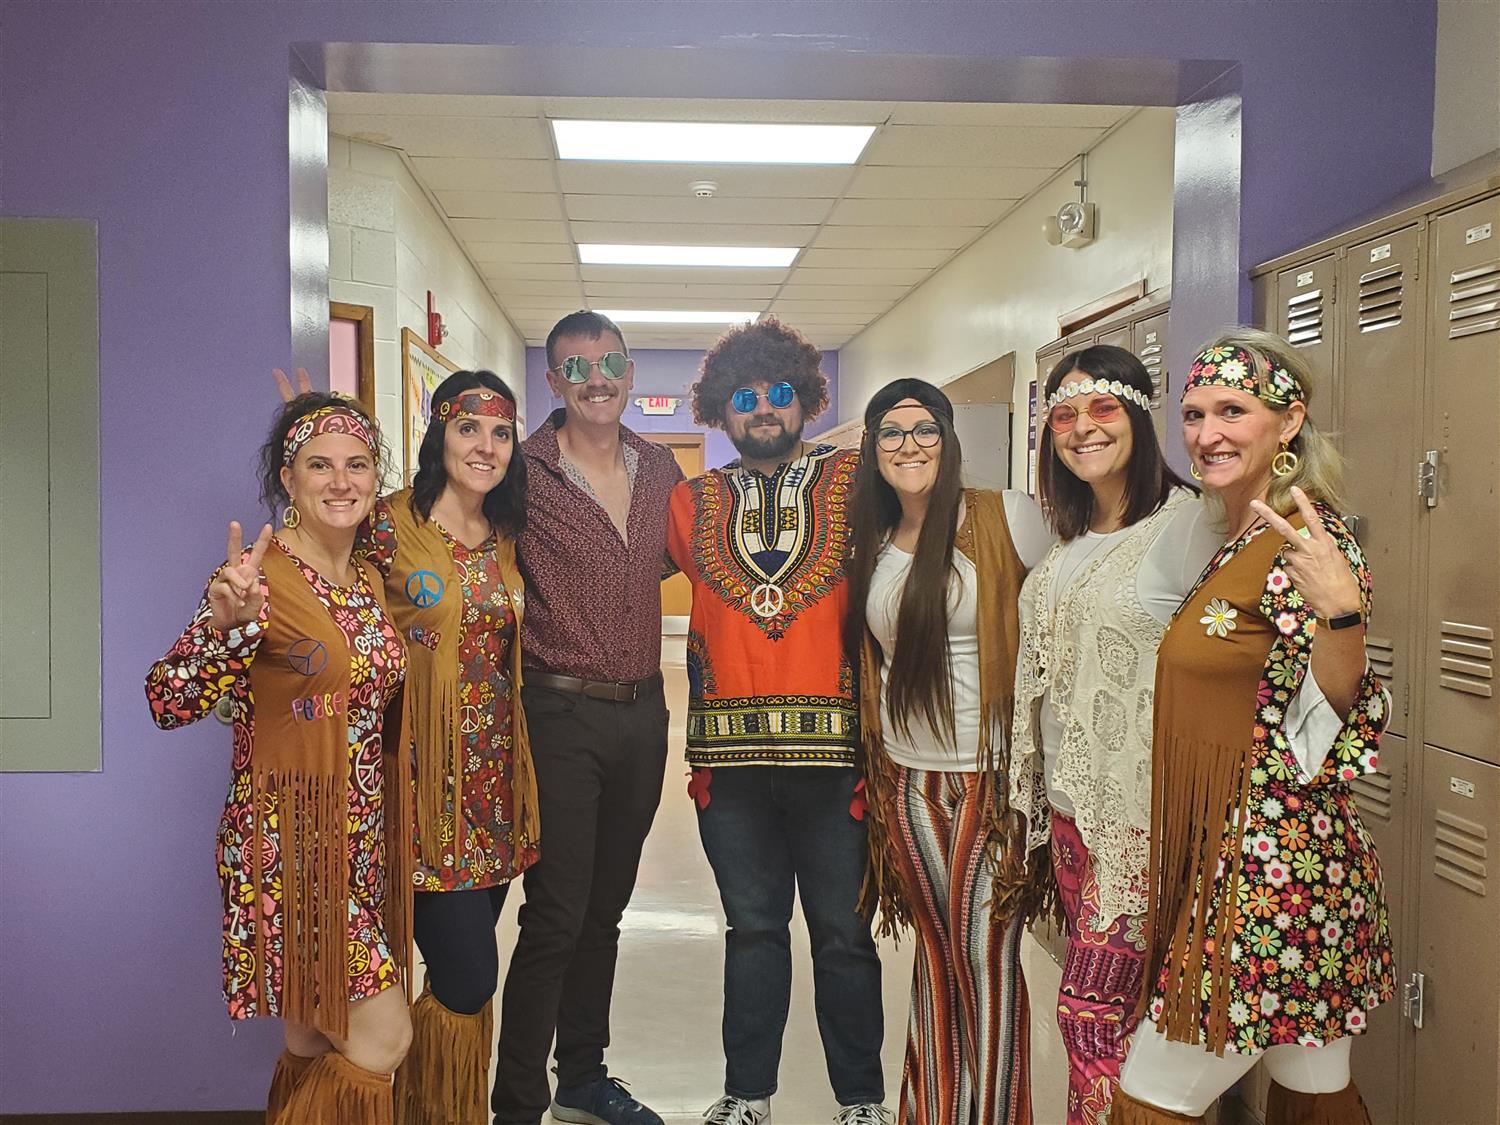 5 teachers dressed up like hippies